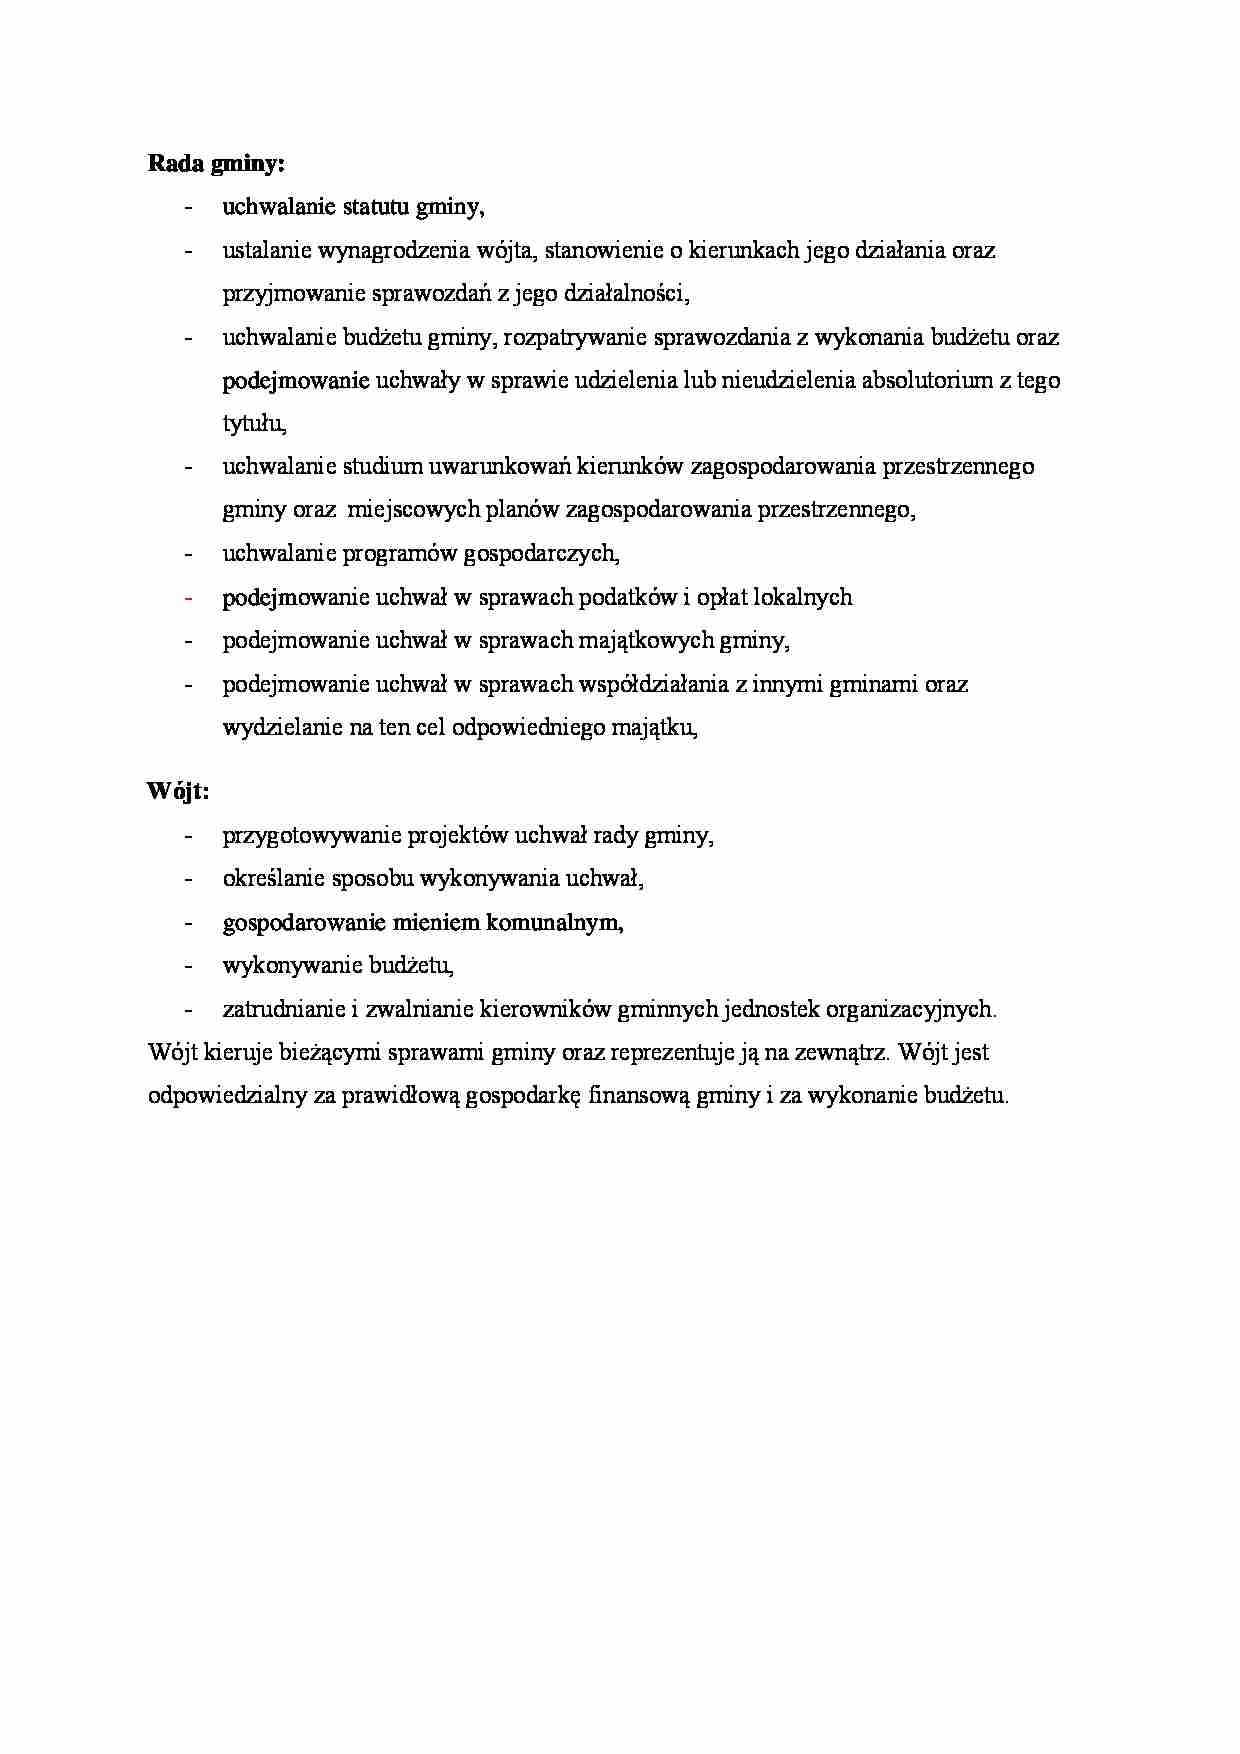 Zadania rady gminy i wójta. - strona 1